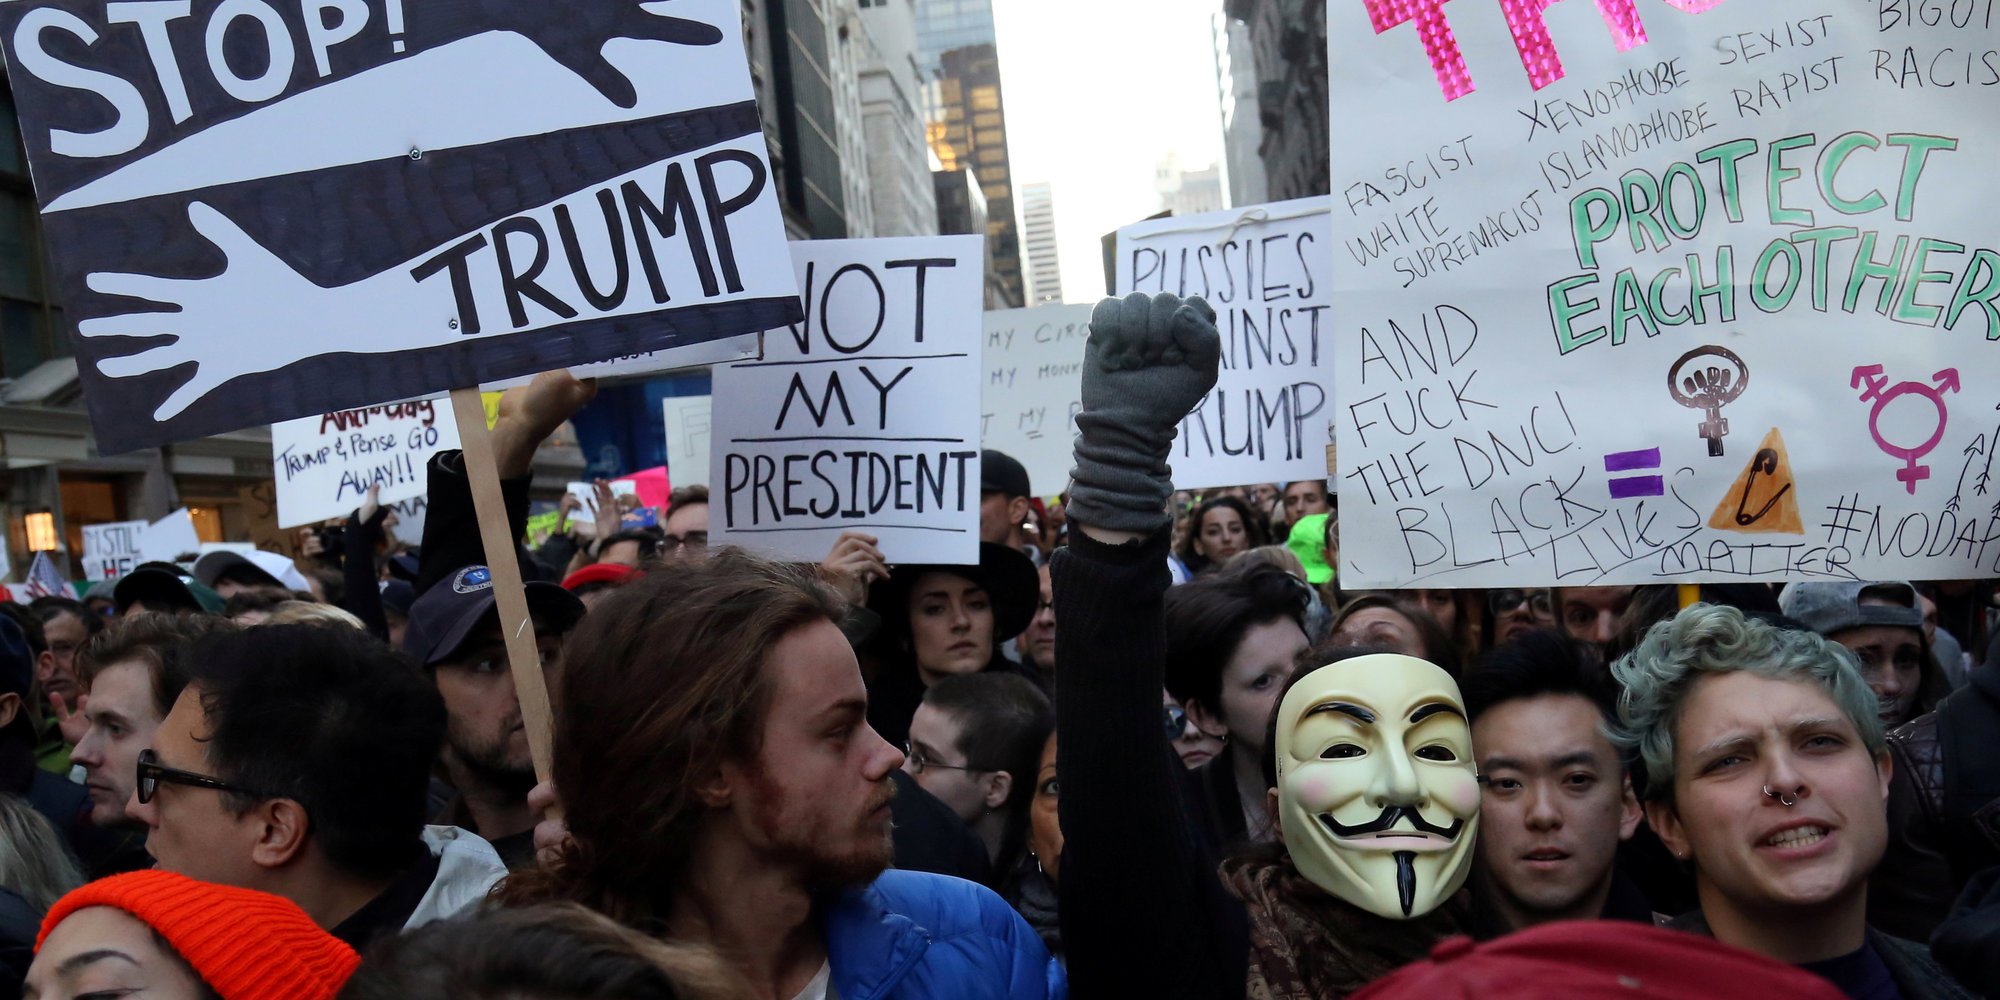 Протести у США набирають обертів — заплановано «мільйонний марш жінок»